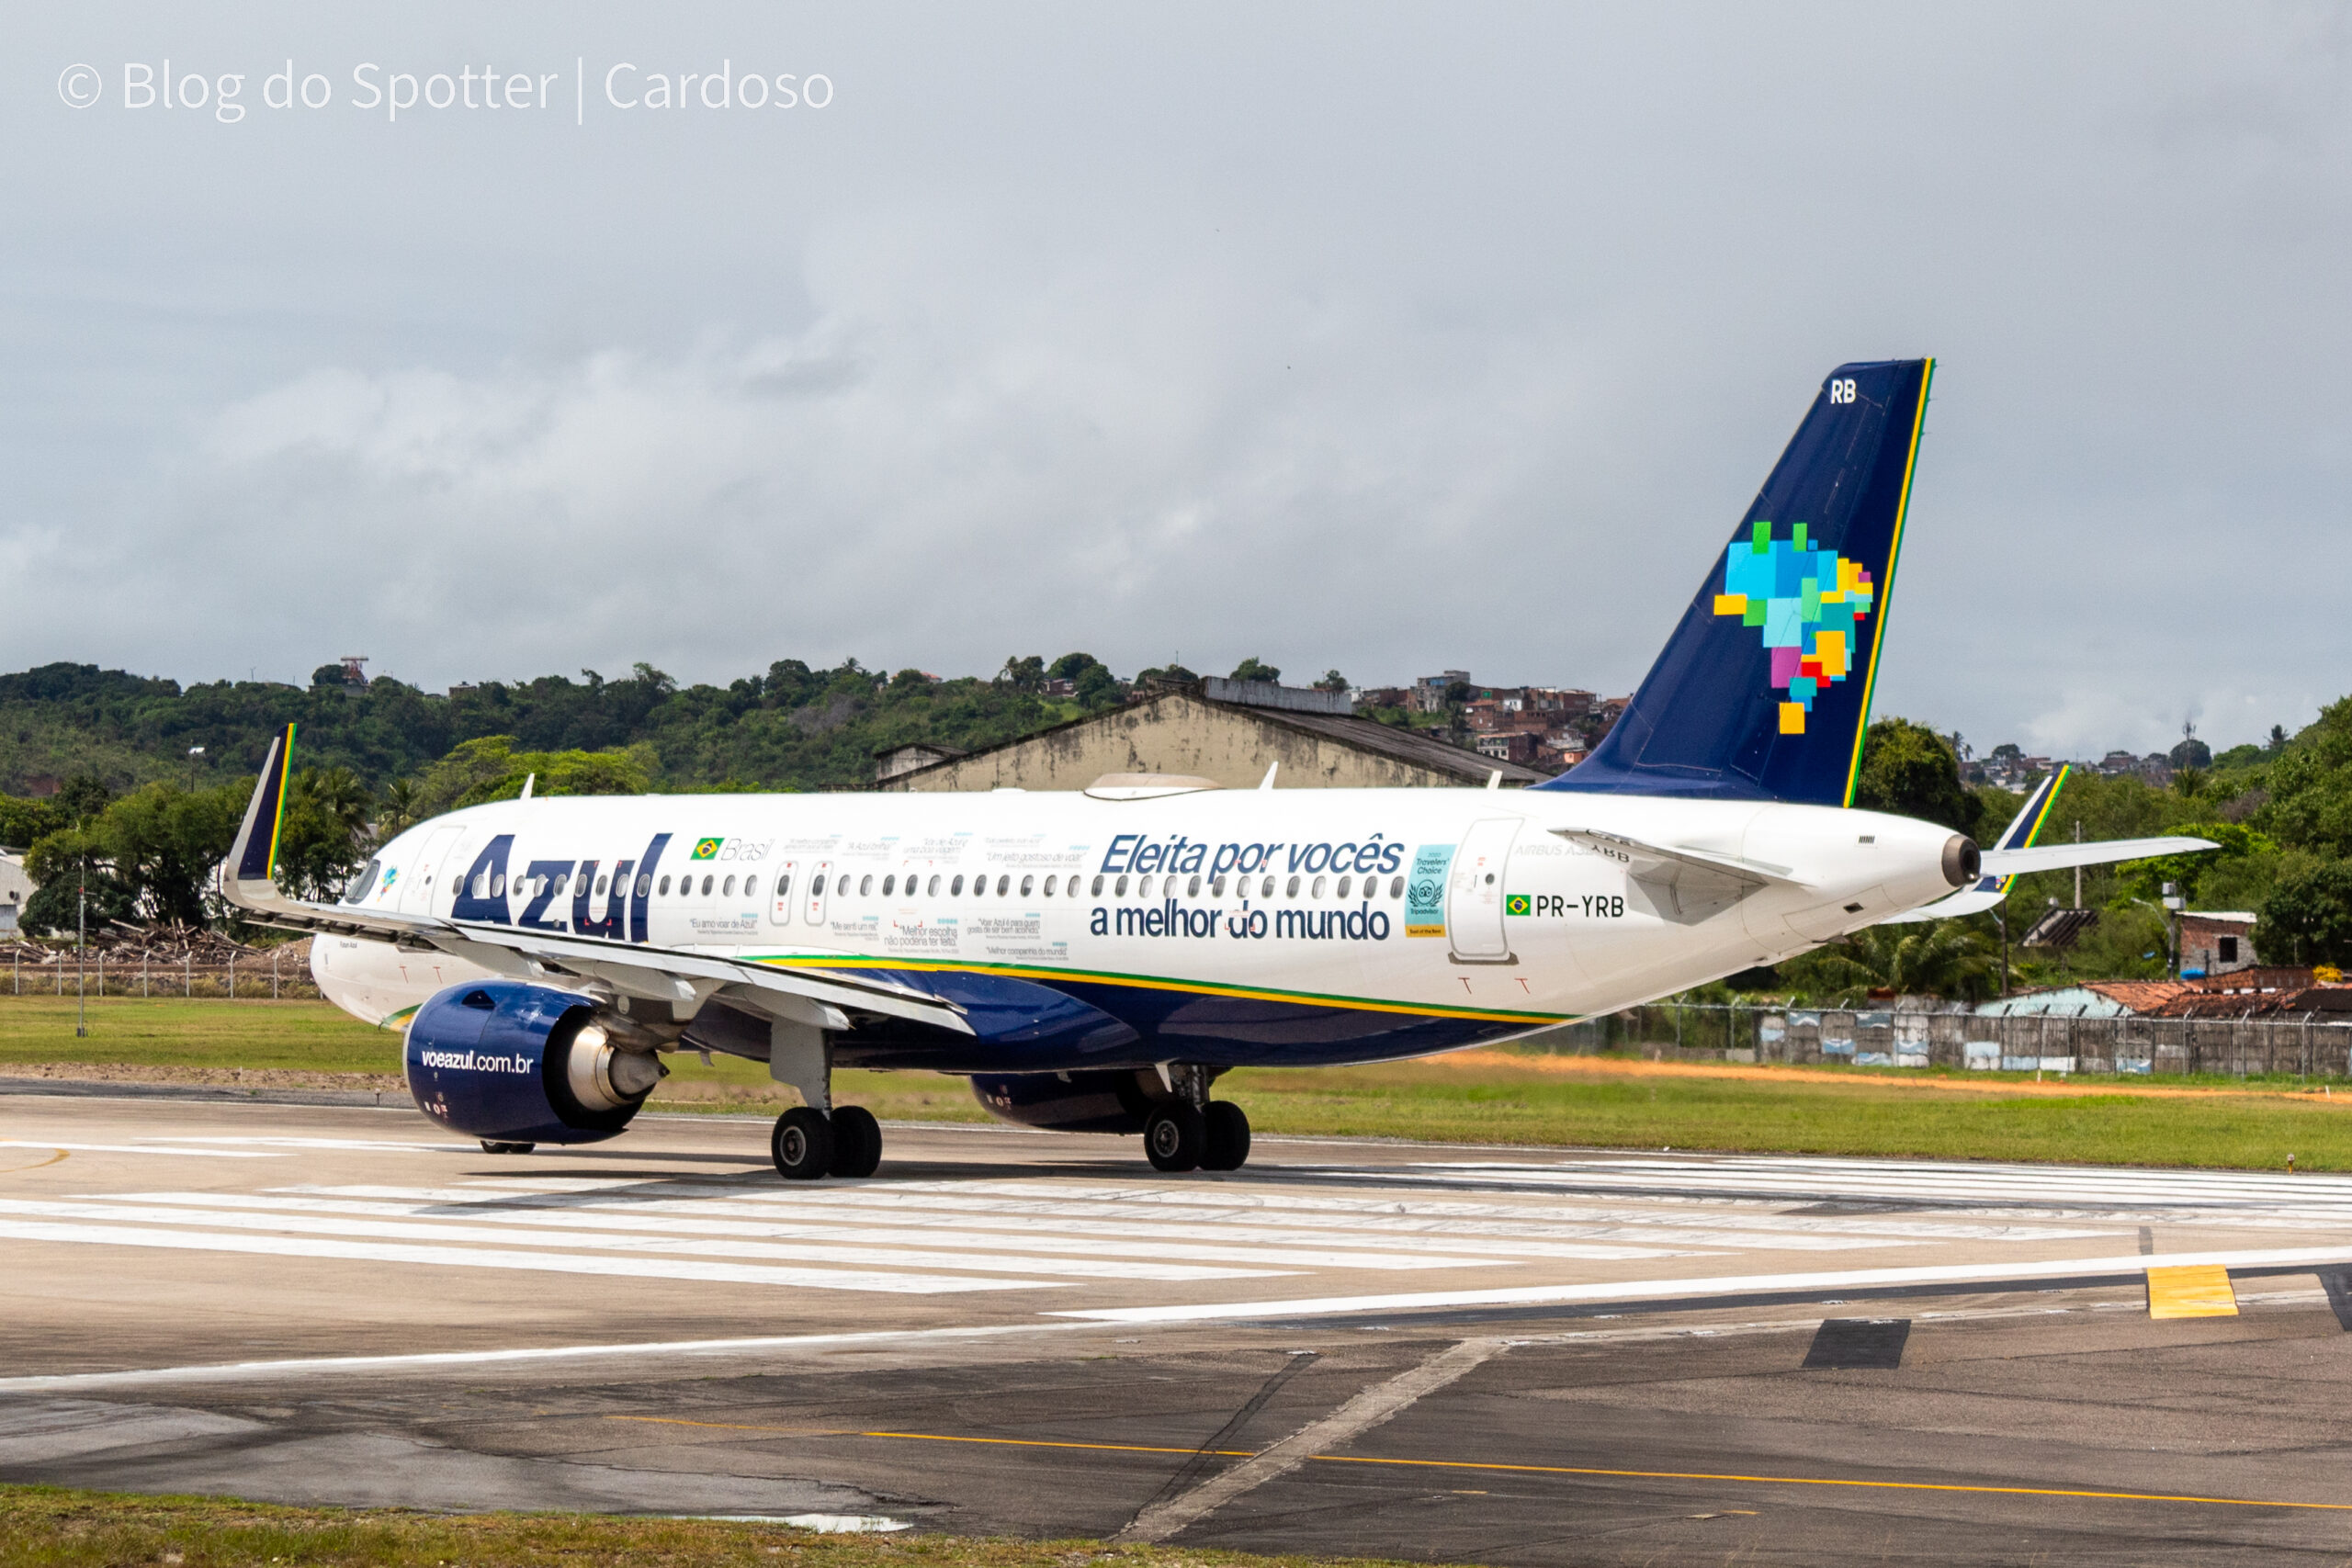 PR-YRB – Airbus A320 NEO – Pintura especial da Azul